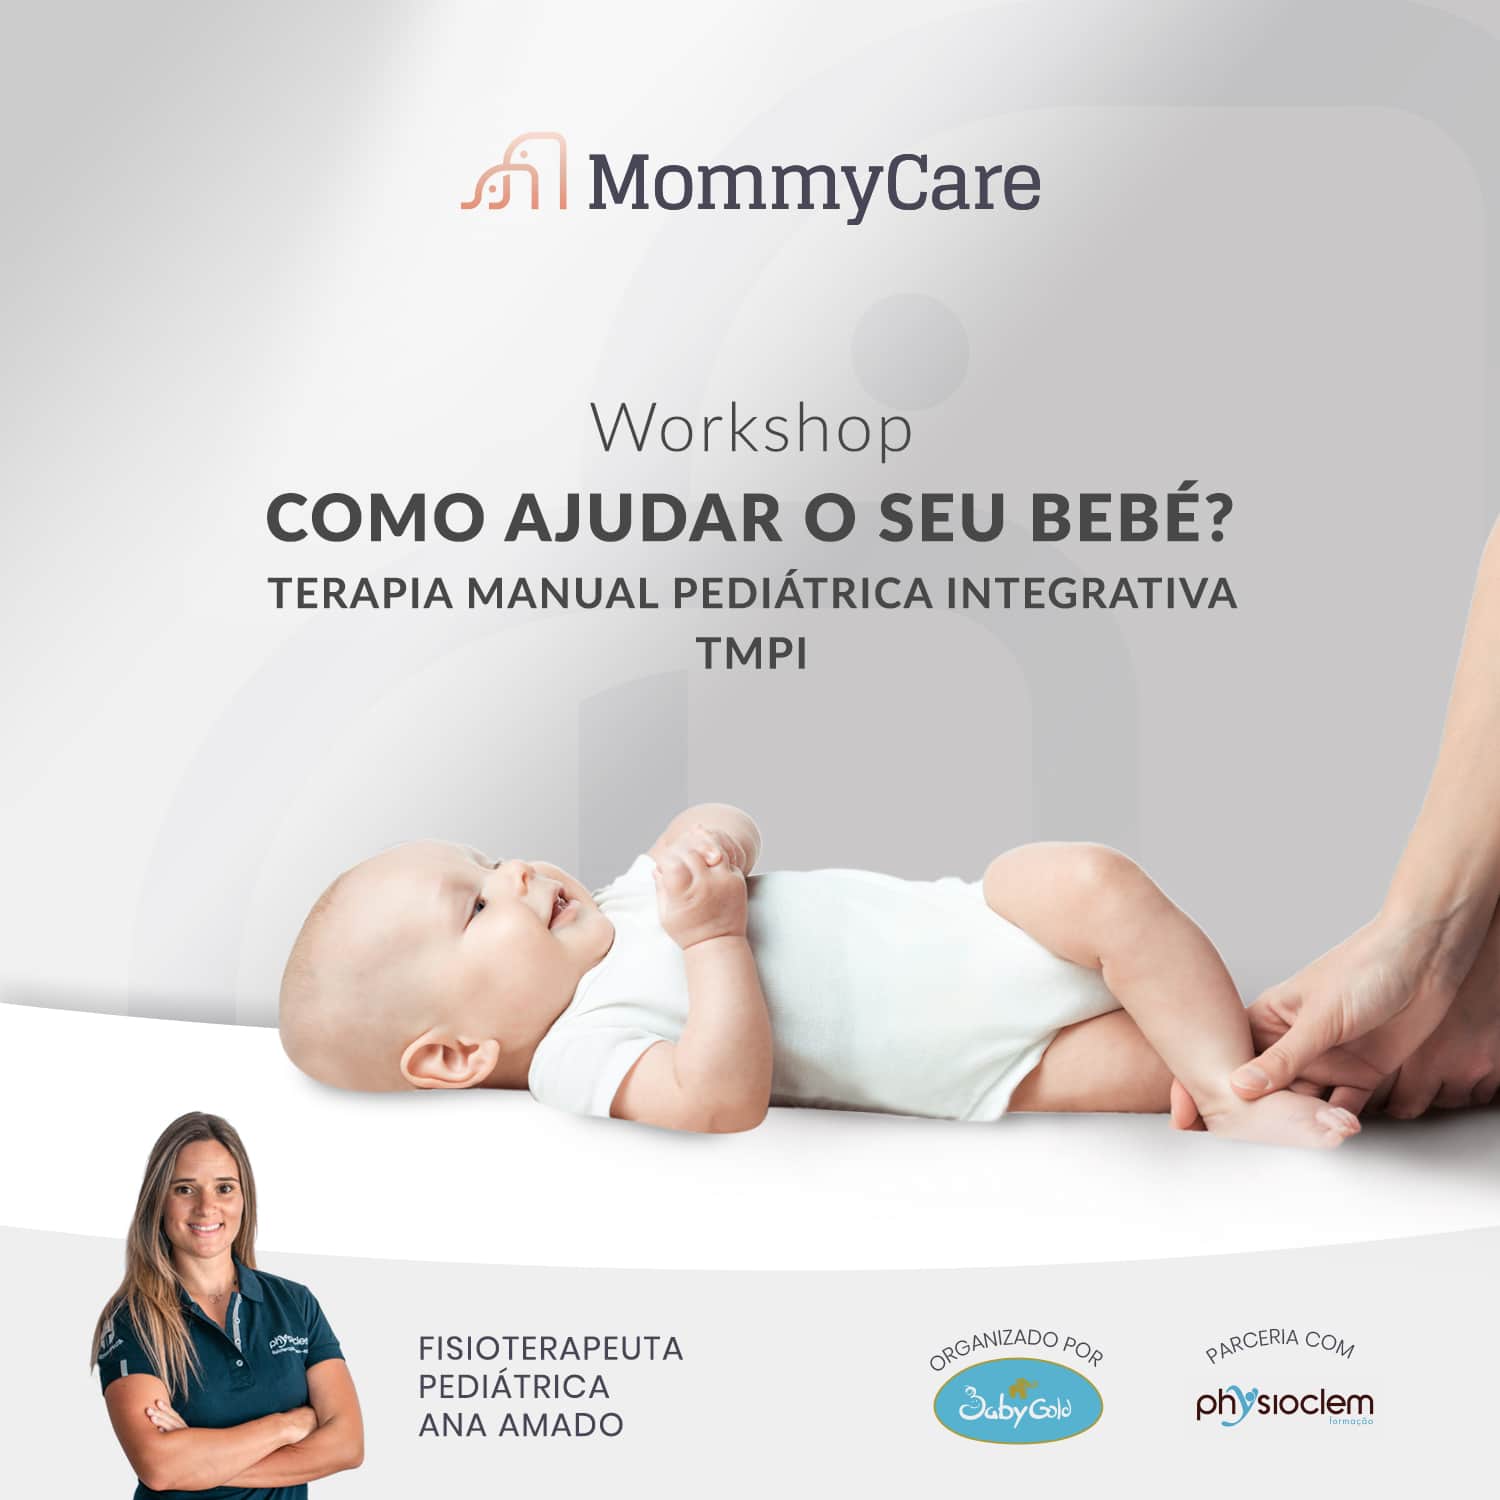 Workshop “Como ajudar o seu bebé?”